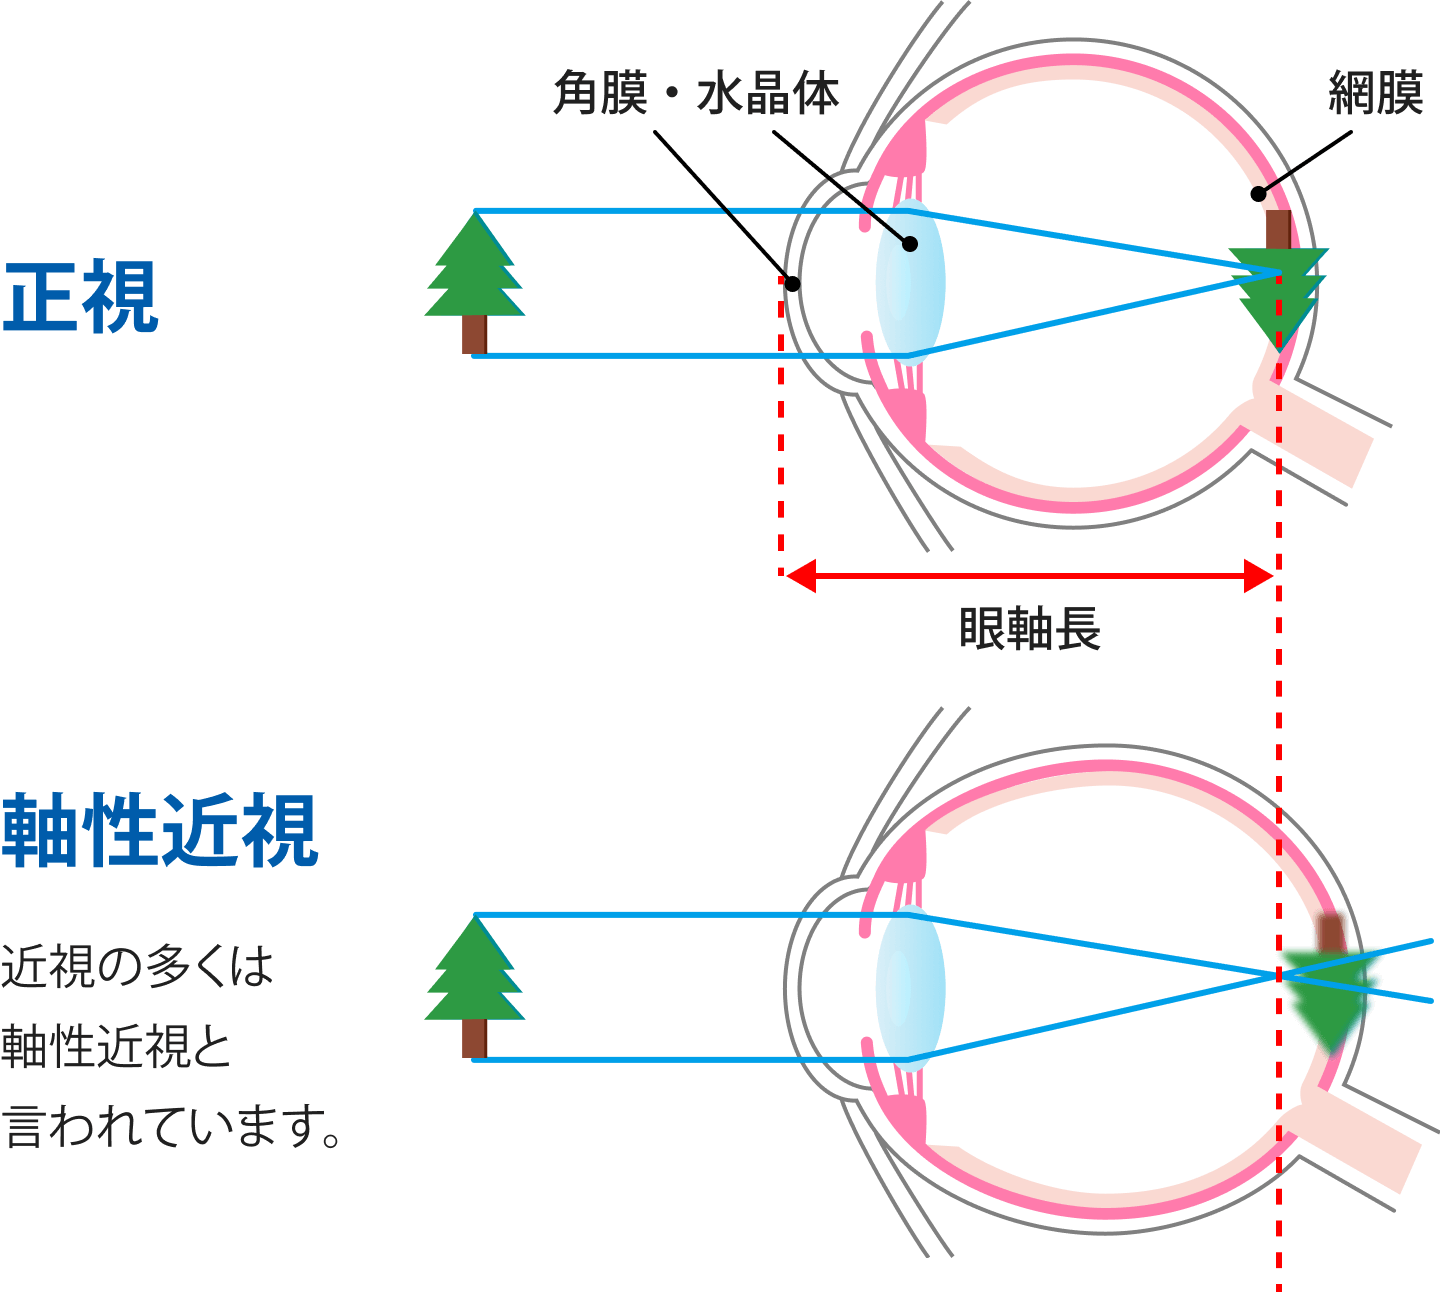 正視, 軸性近視: 近視の多くは軸性近視と言われています。